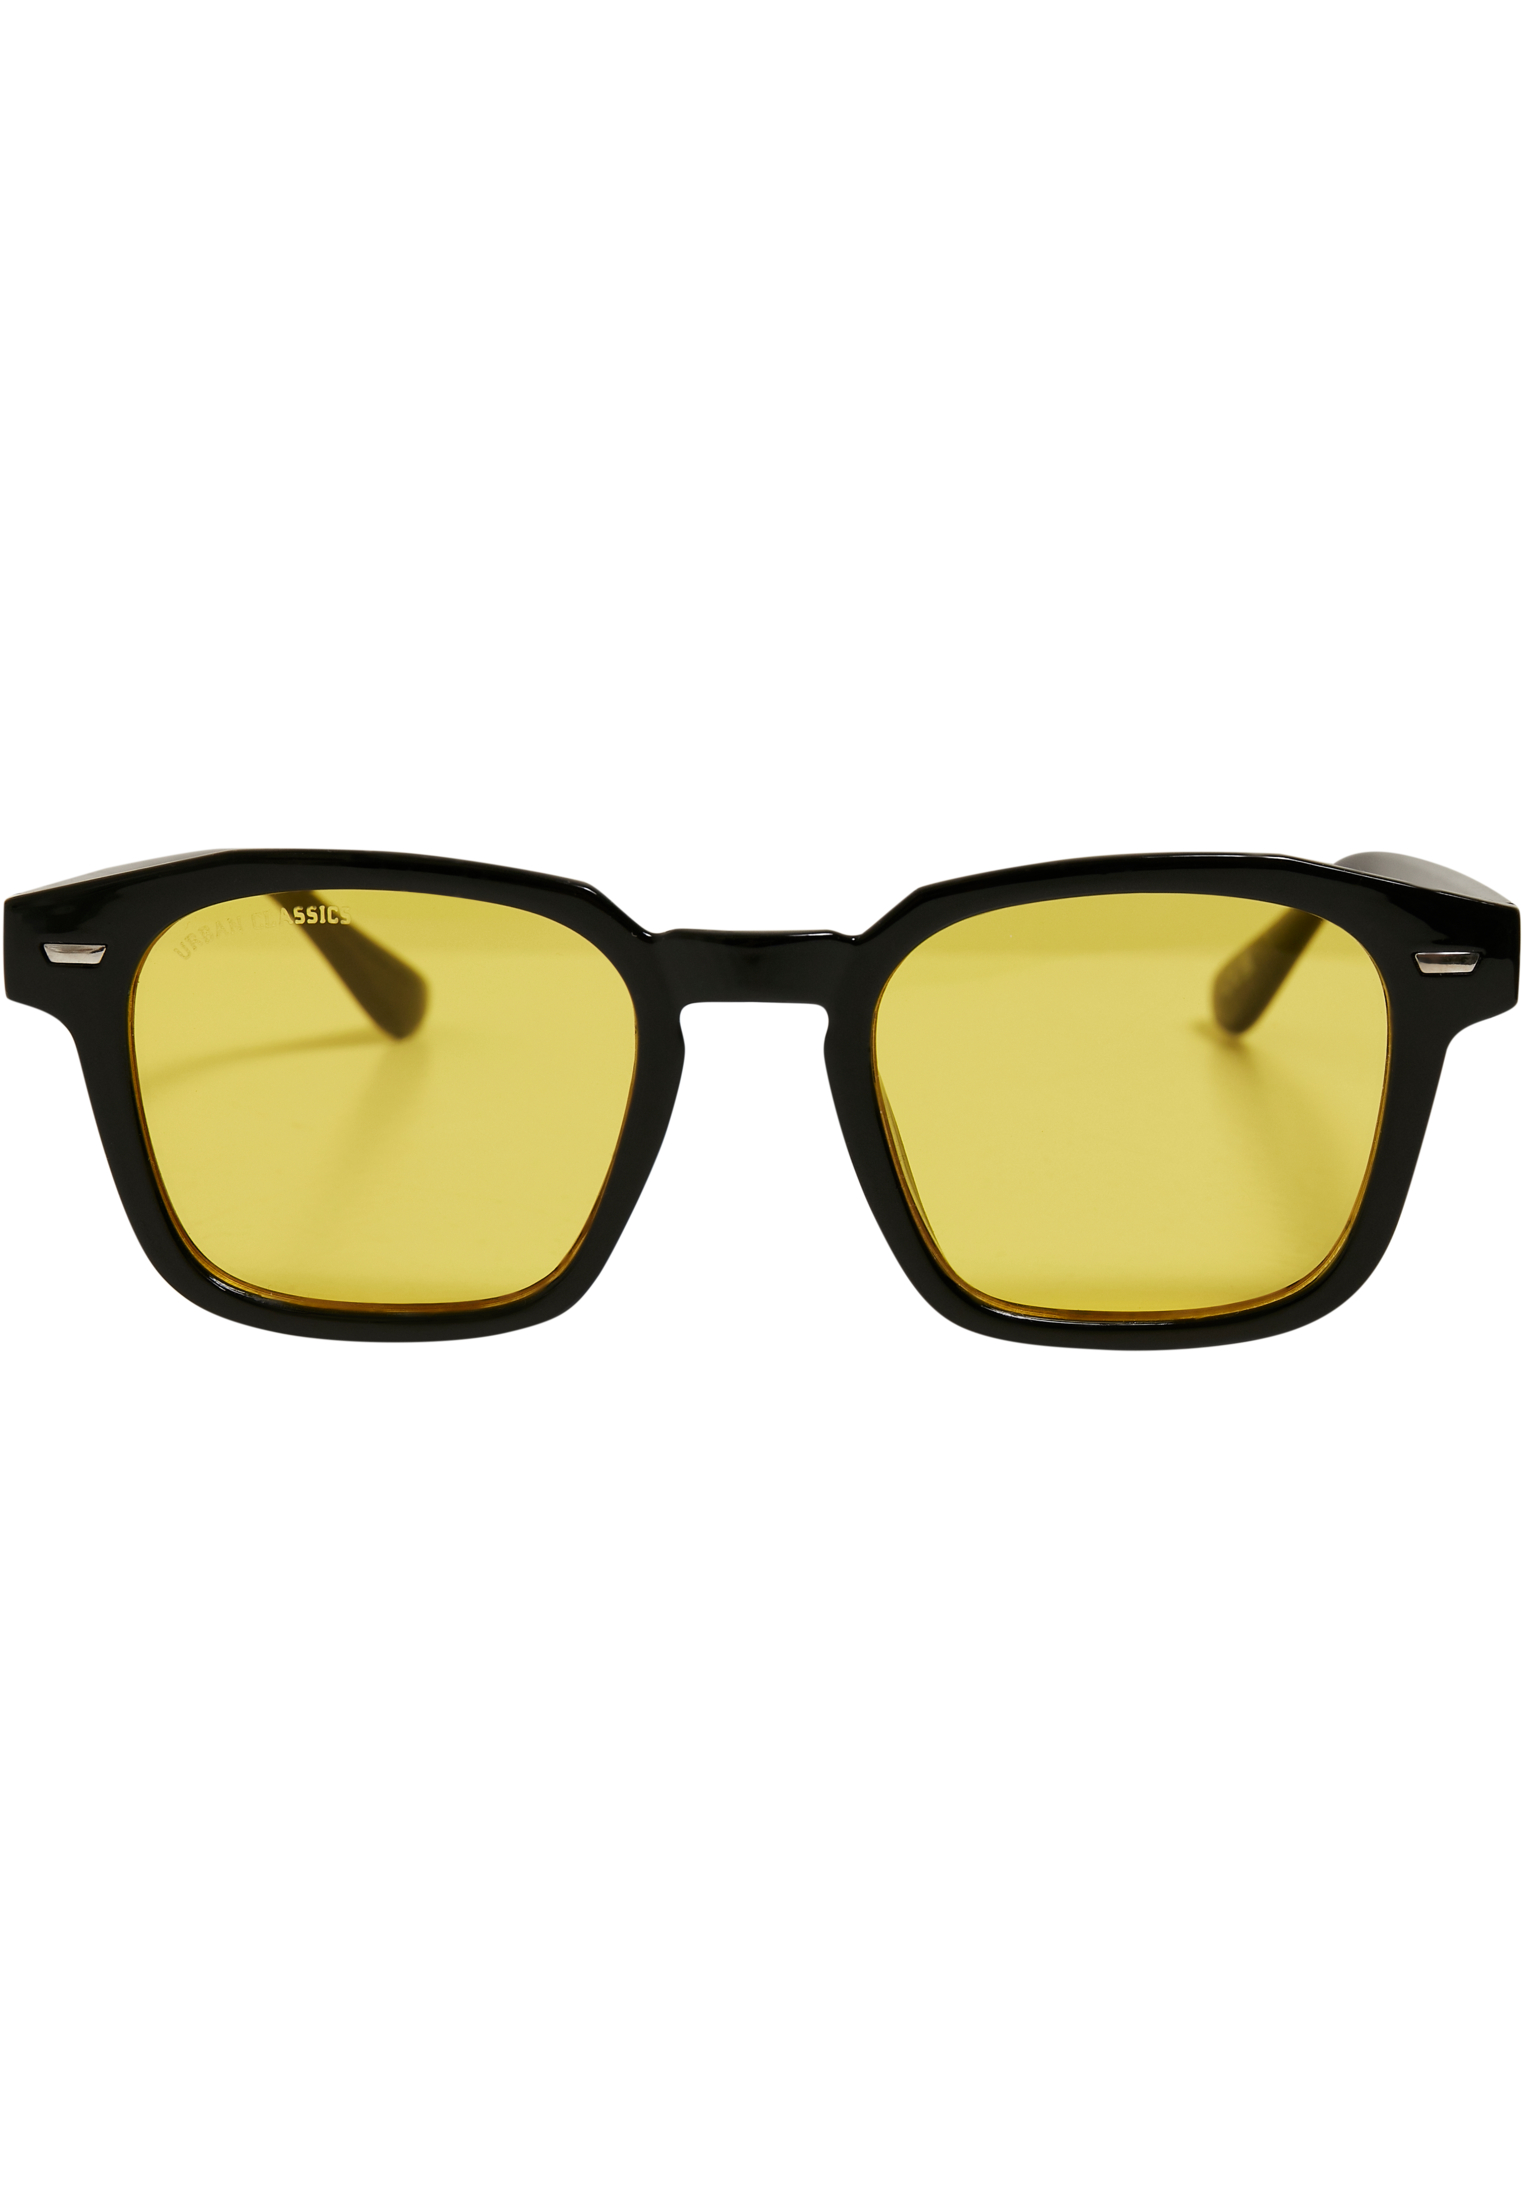 Case-TB5210 With Maui Sunglasses